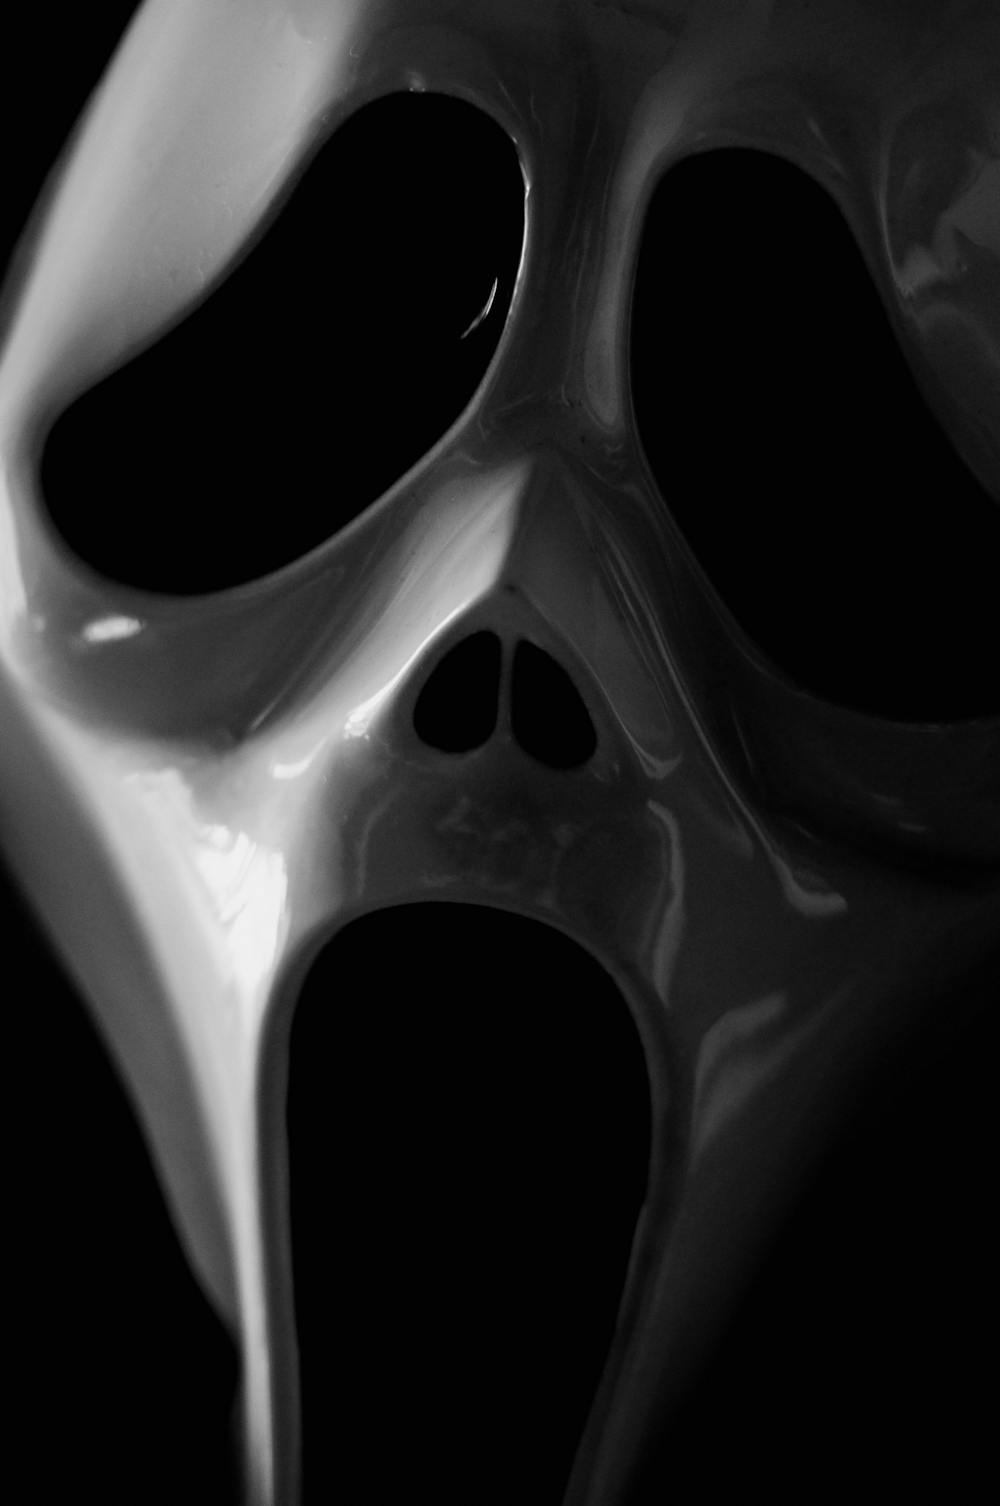 Review: ‘Scream’ (2022) lives up to its original glory